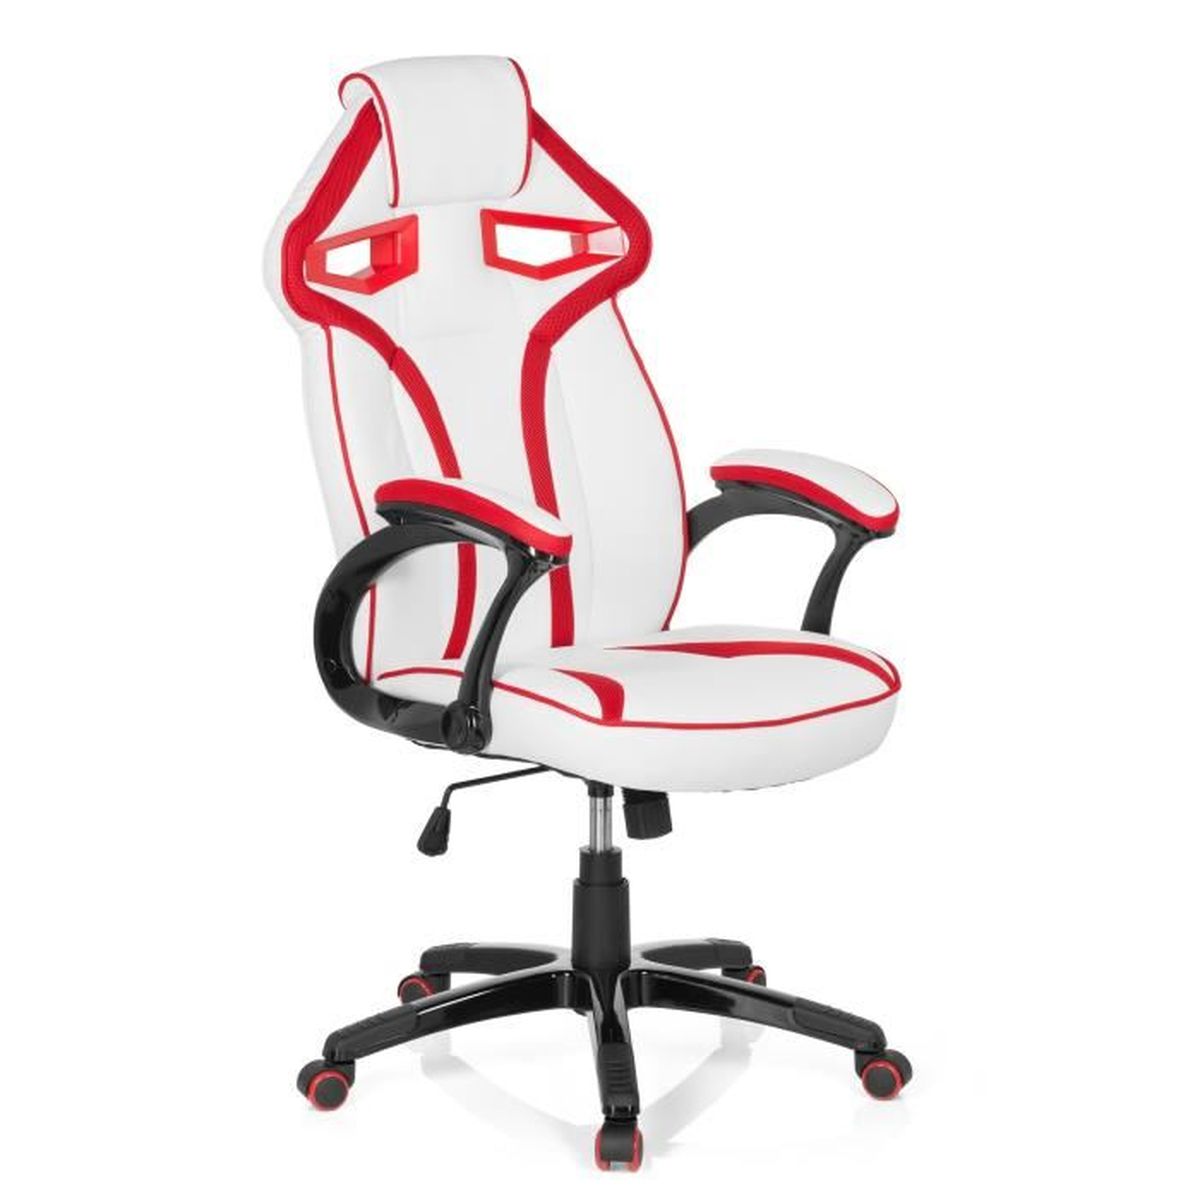 Chaise gaming / Chaise de bureau GUARDIAN PU blanc / rouge hjh OFFICE